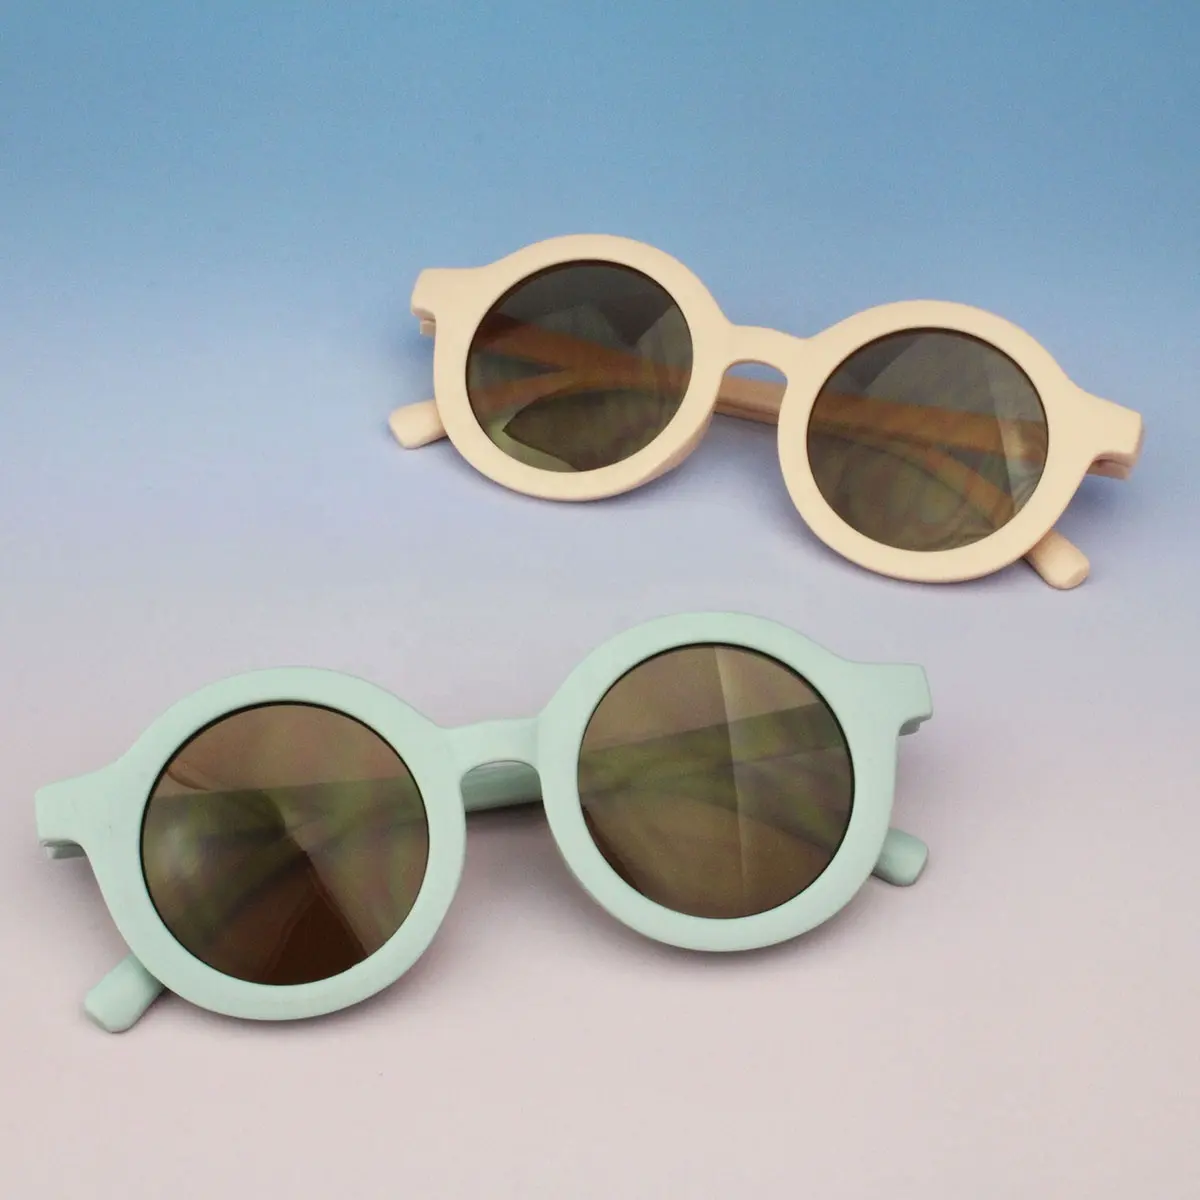 نظارات Feirong للأطفال جديدة للأطفال من عمر 1-8 سنوات نظارات شمسية للأطفال مستديرة وعصرية بسعر رخيص بالجملة